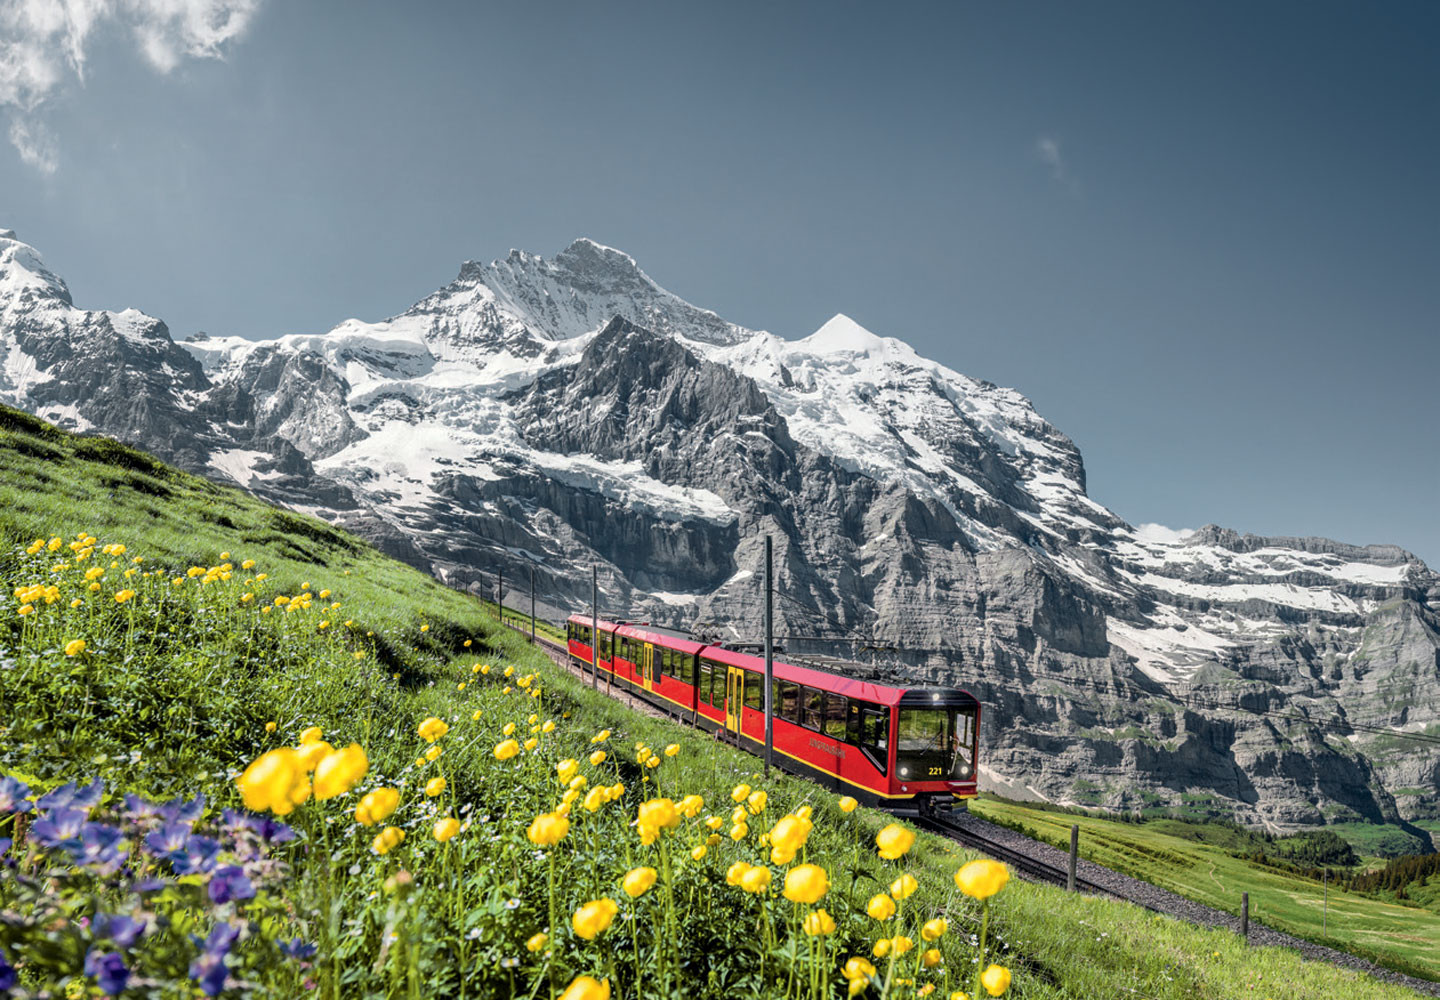 Jungfrau Railway-Poster - Jungfraubahn in front of Jungfrau